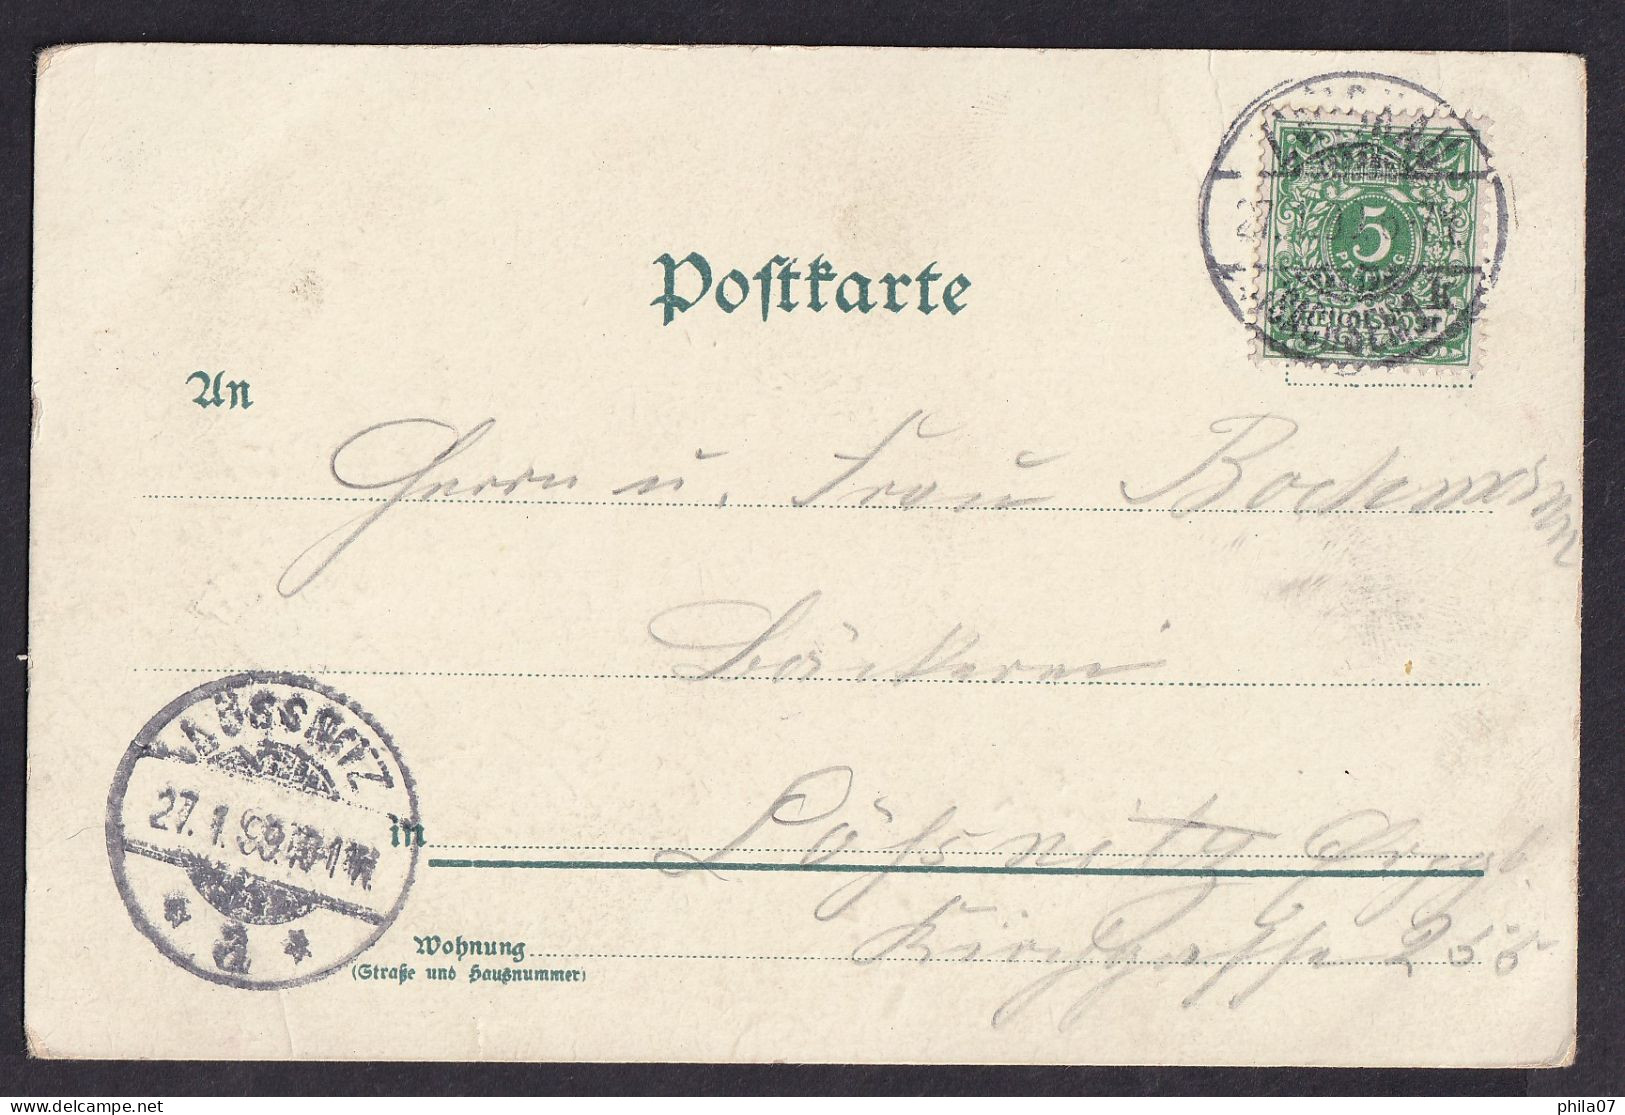 Gruss Aus ... / Wenn Ich Schreibe Kurz Und Bundig... / Year 1899 / Long Line Postcard Circulated, 2 Scans - Saluti Da.../ Gruss Aus...